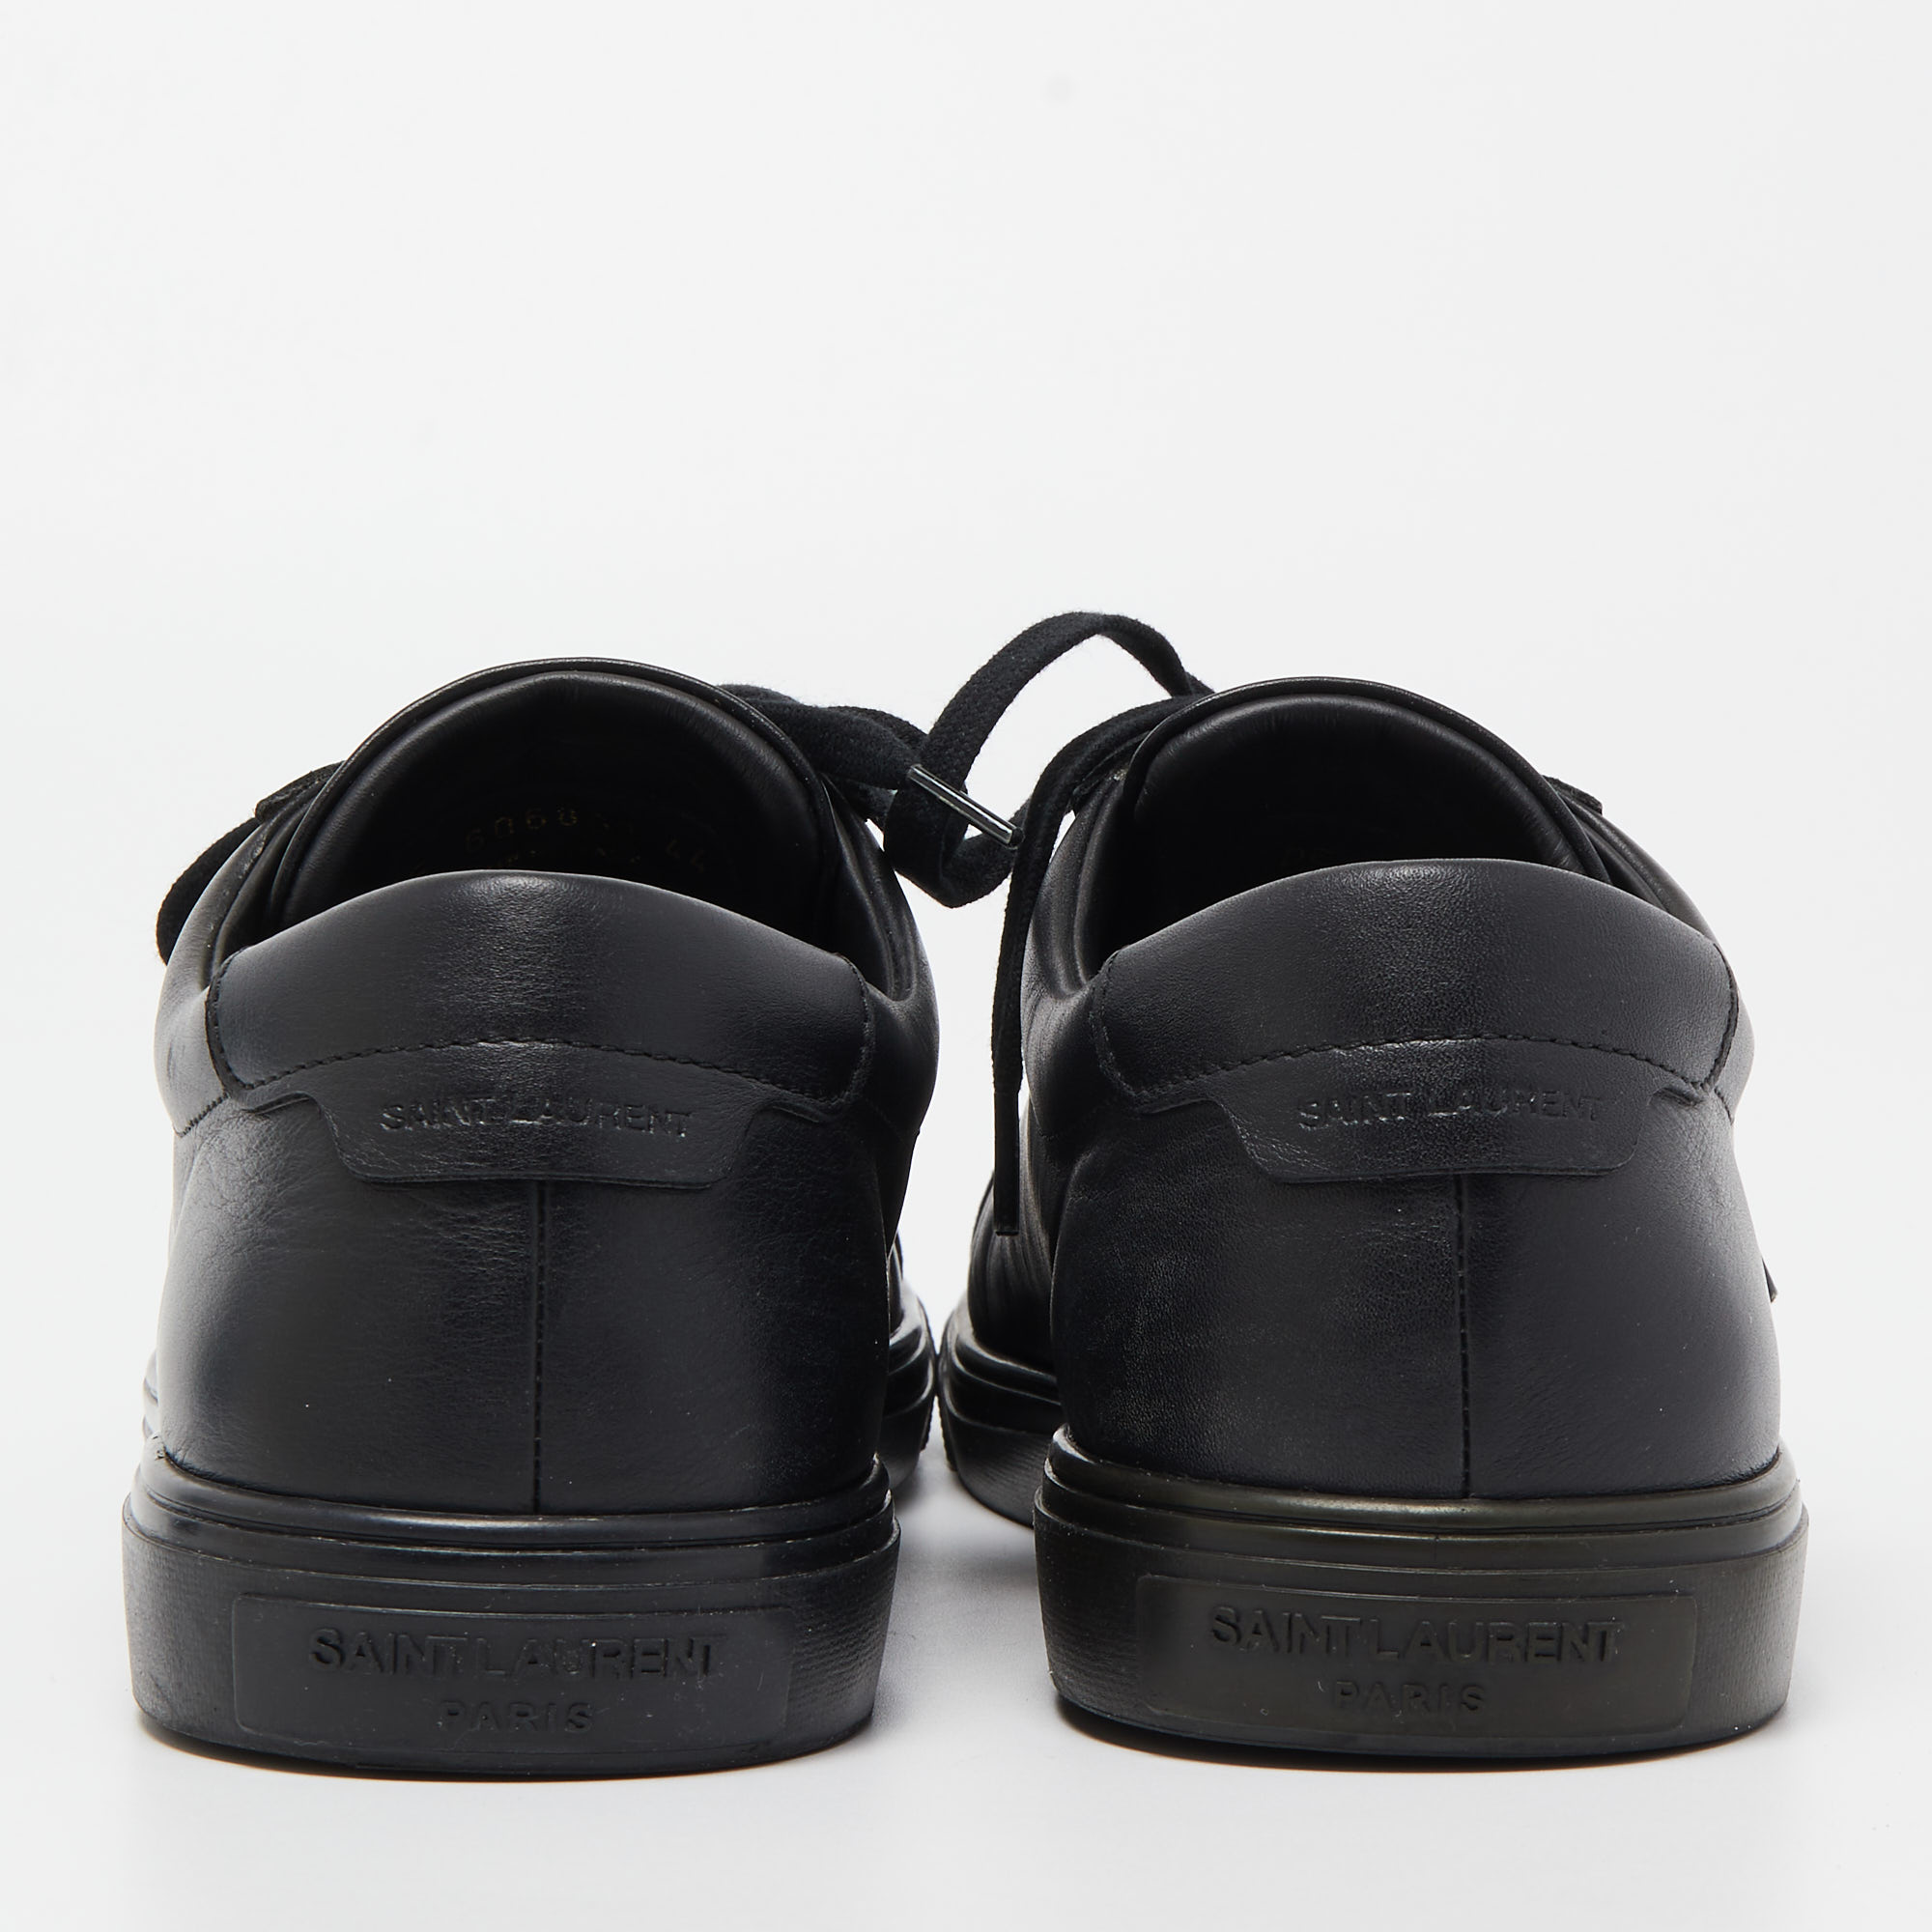 Saint Laurent Paris Black Leather Andy Low Top Sneakers Size 44